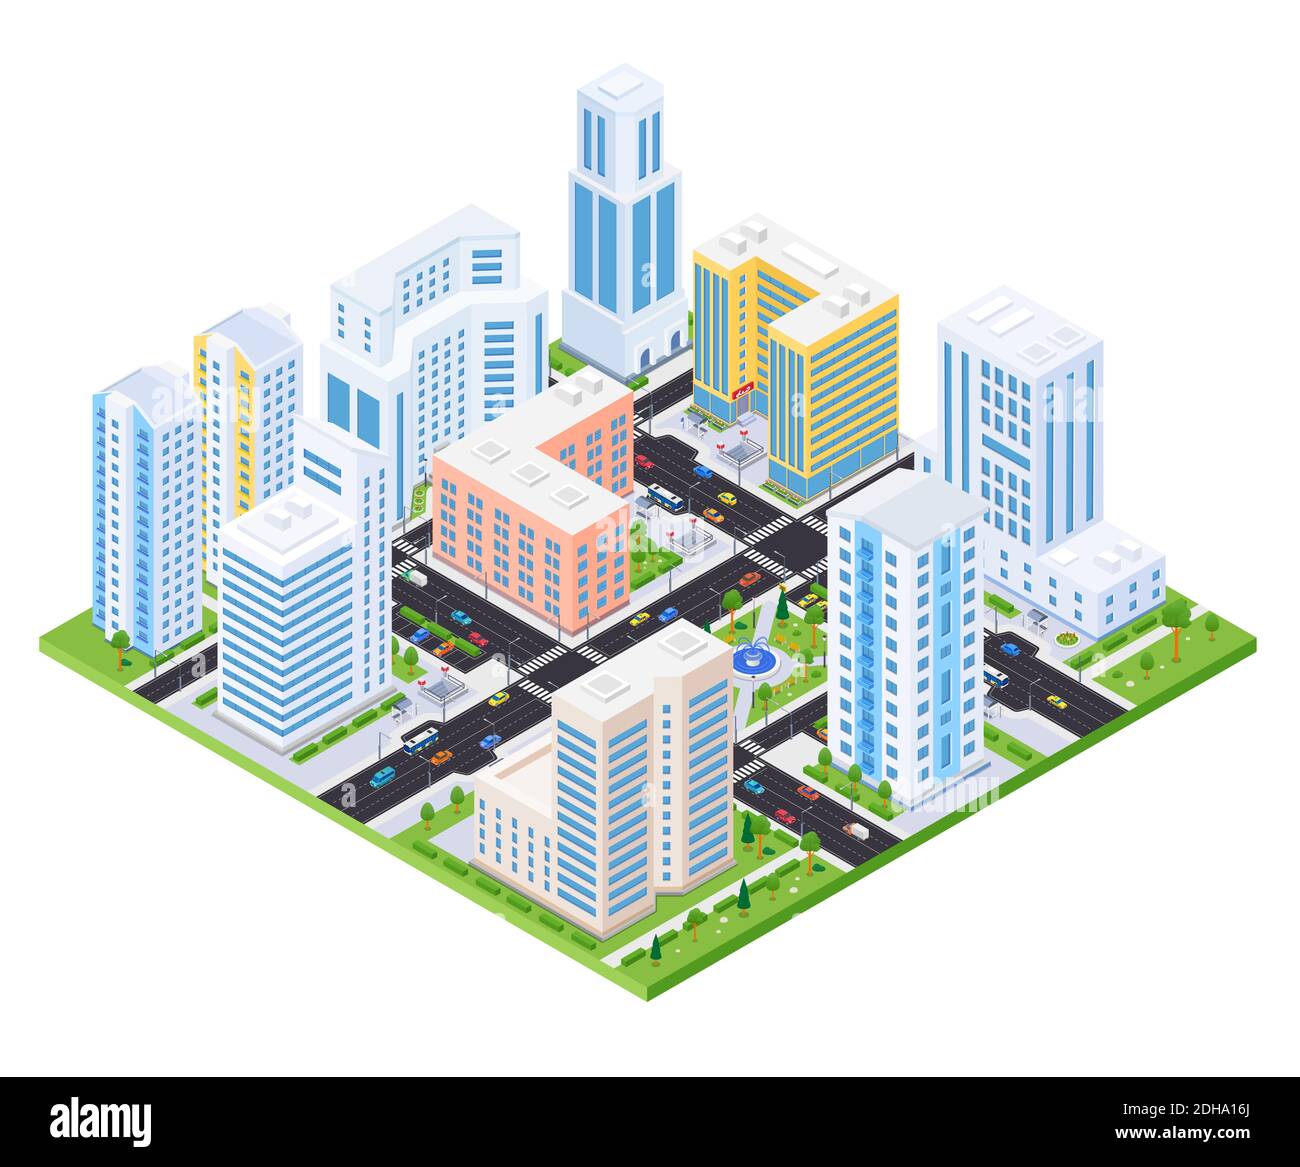 Wohnkomplex - moderne Vektor bunte isometrische Illustration. Hochwertige Stadtlandschaft mit Wohnhäusern, Hochhäusern, Straße mit Autos. Echt Stock Vektor